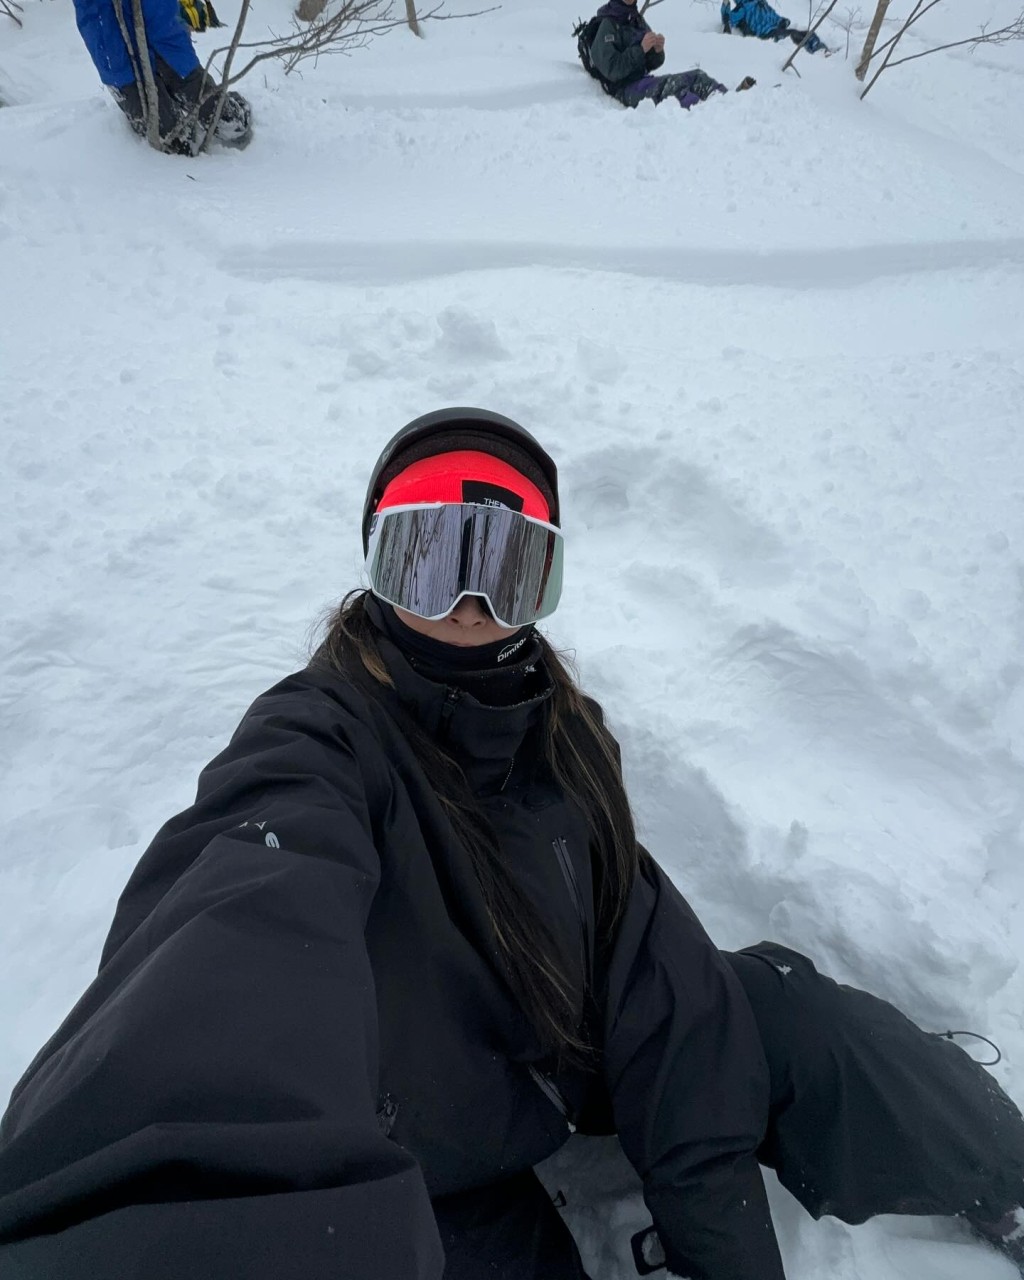 保暖冷帽也是滑雪必備單品之一，徐濠縈則選戴The North Face針織冷帽。